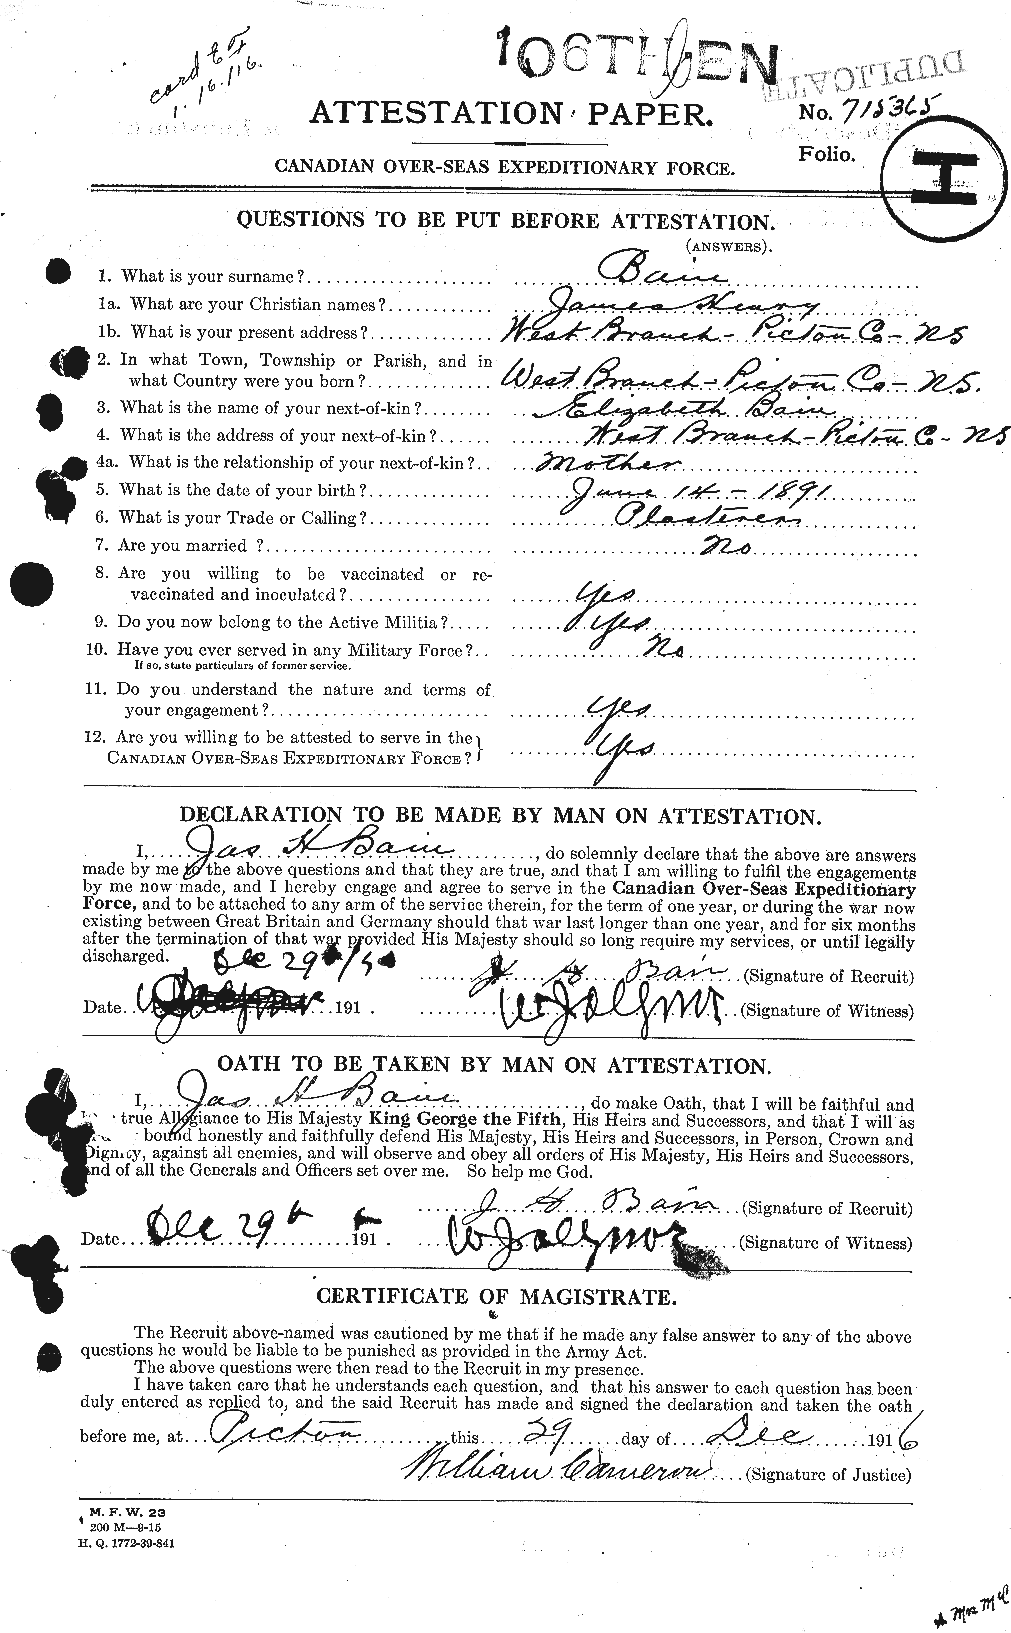 Dossiers du Personnel de la Première Guerre mondiale - CEC 226100a